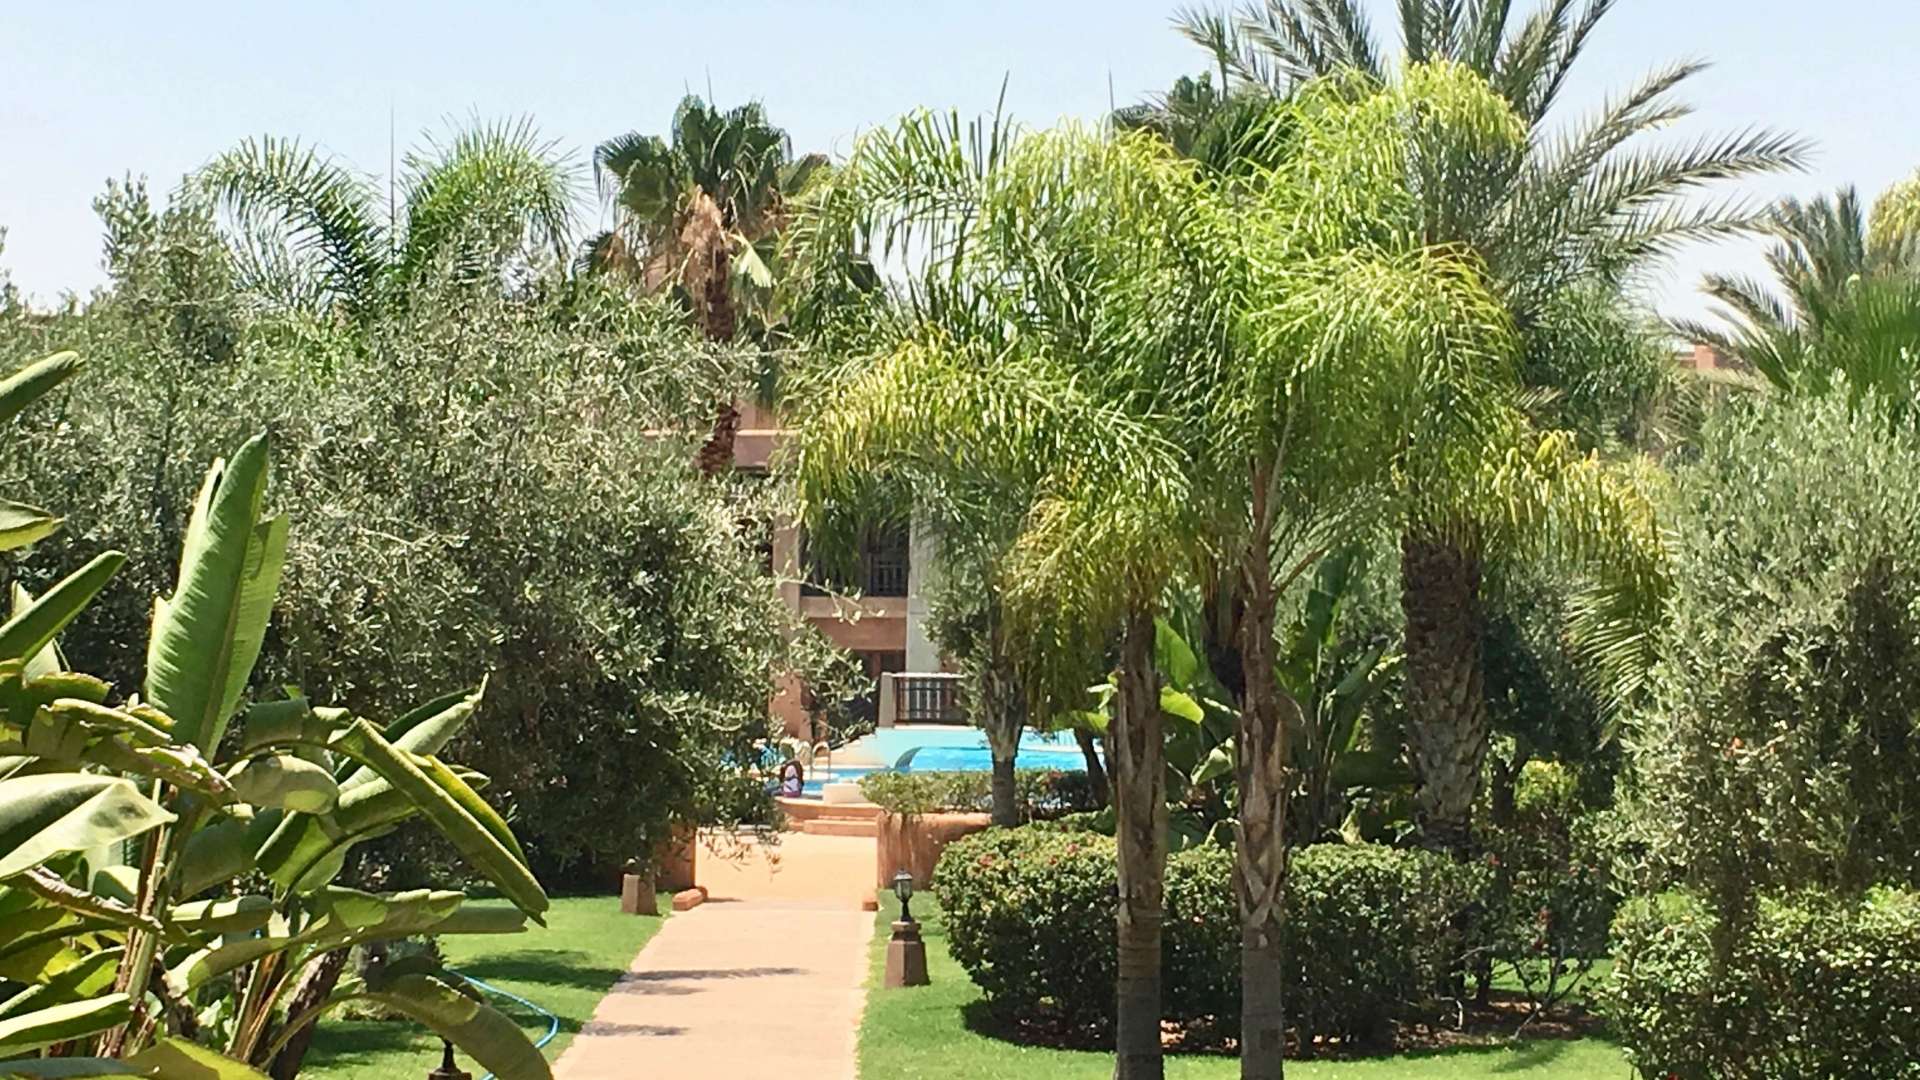 Vente,Appartement,Vente Appartement 2 chambres en rez-de-jardin dans une belle residence avec piscine et jardin Agdal Marrakech,Marrakech,Agdal